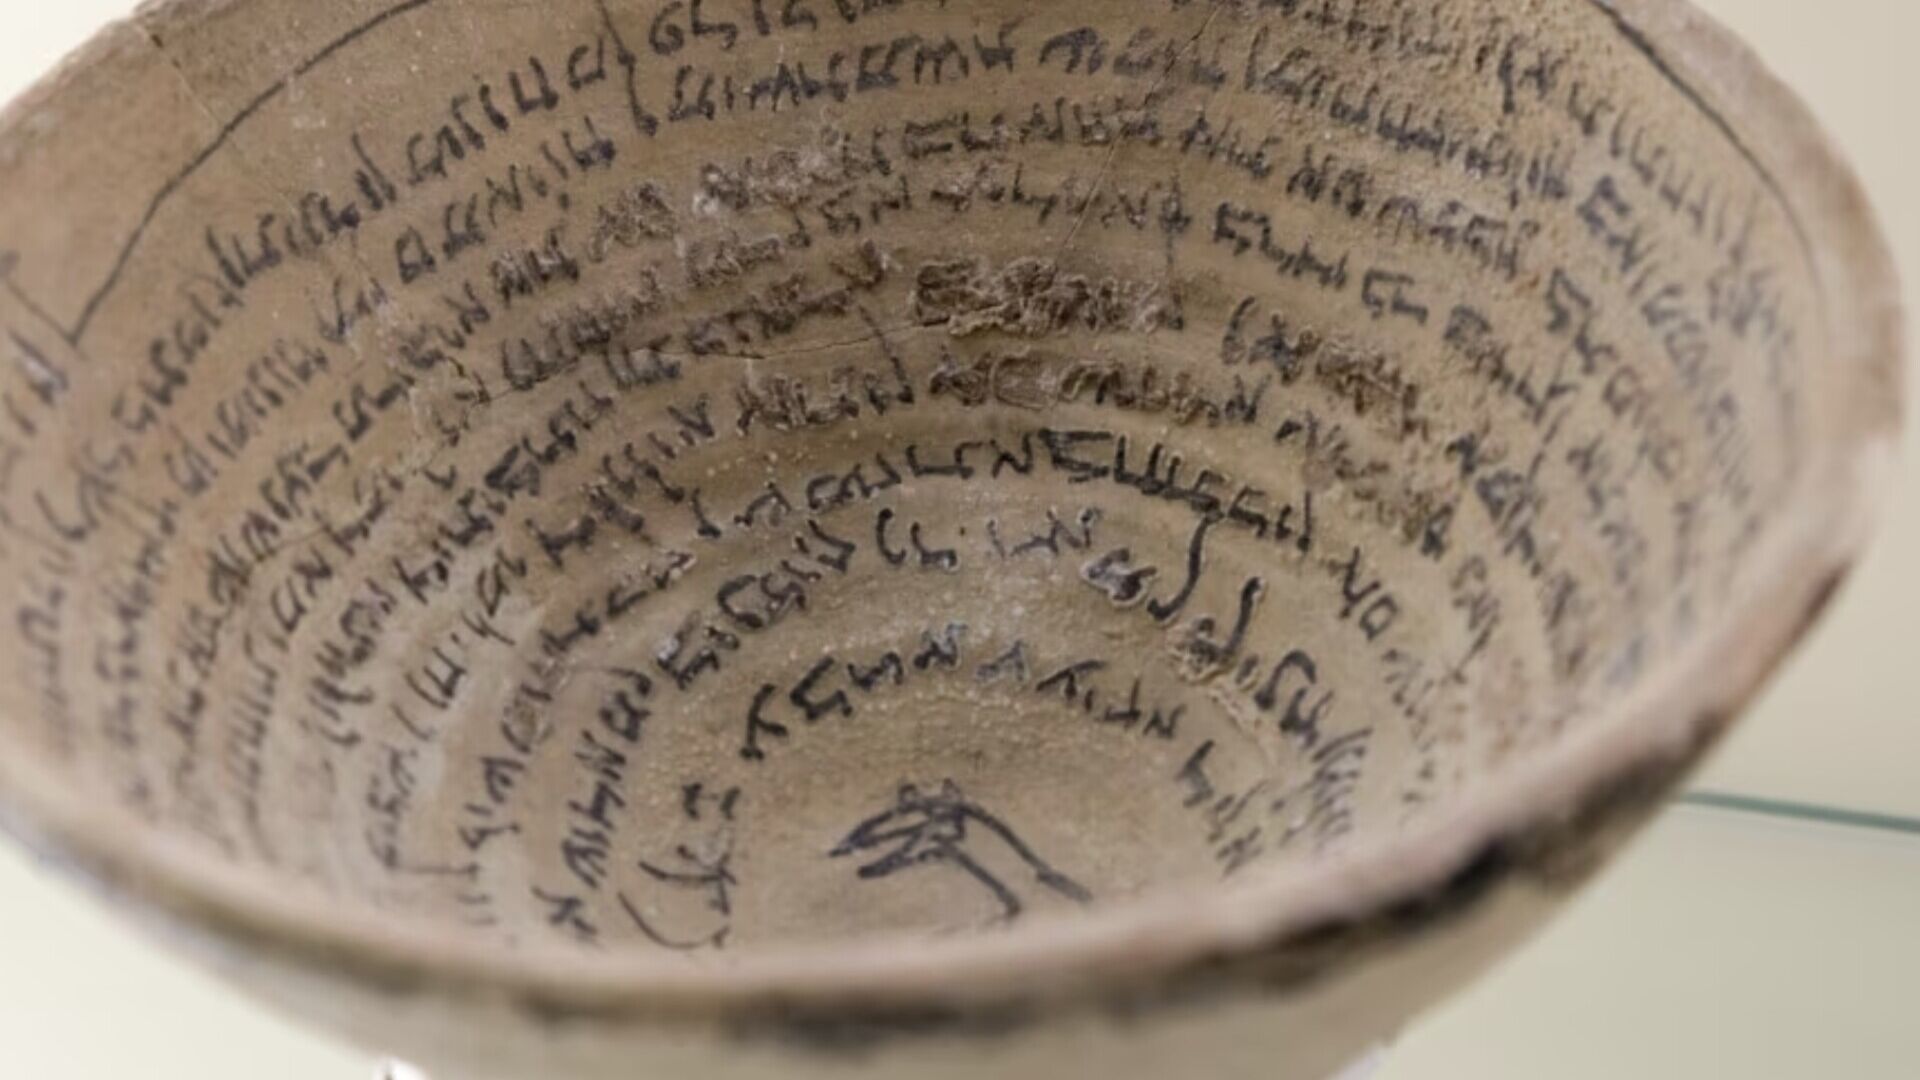 Cuneiform: A representation of cuneiform writing on an Akkadian vase